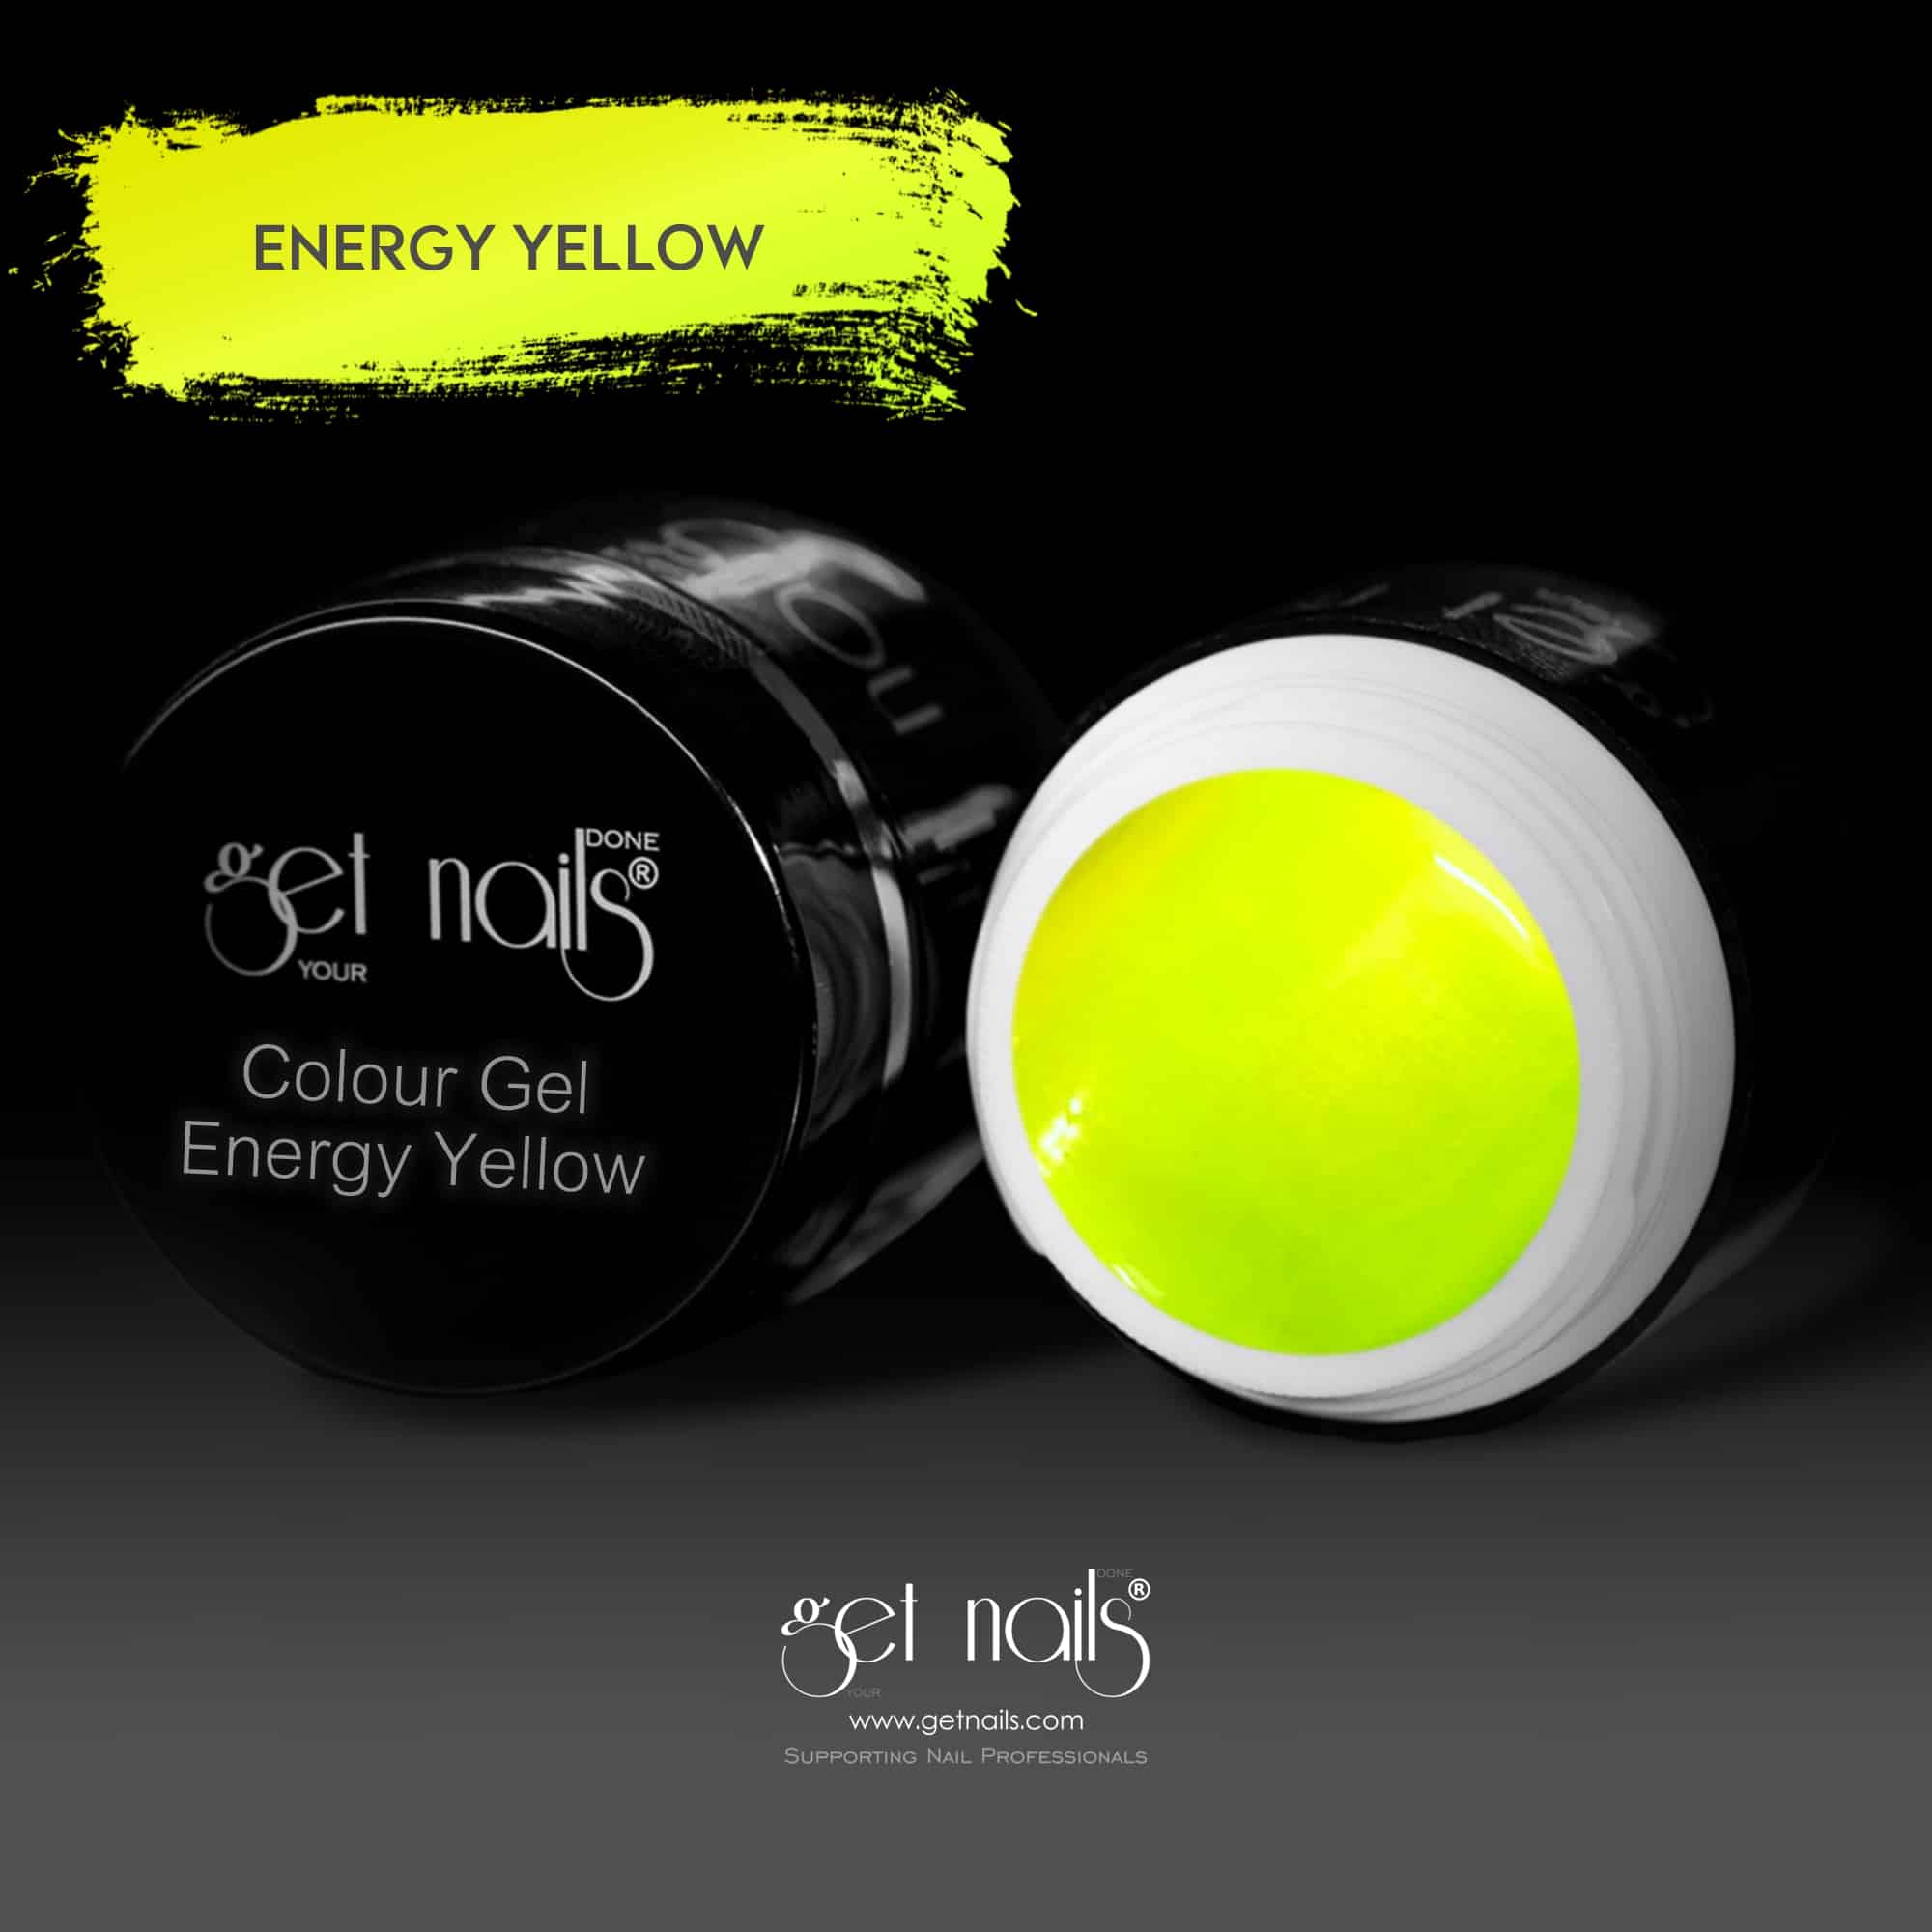 Get Nails Austria - Цветной гель Energy Yellow 5g